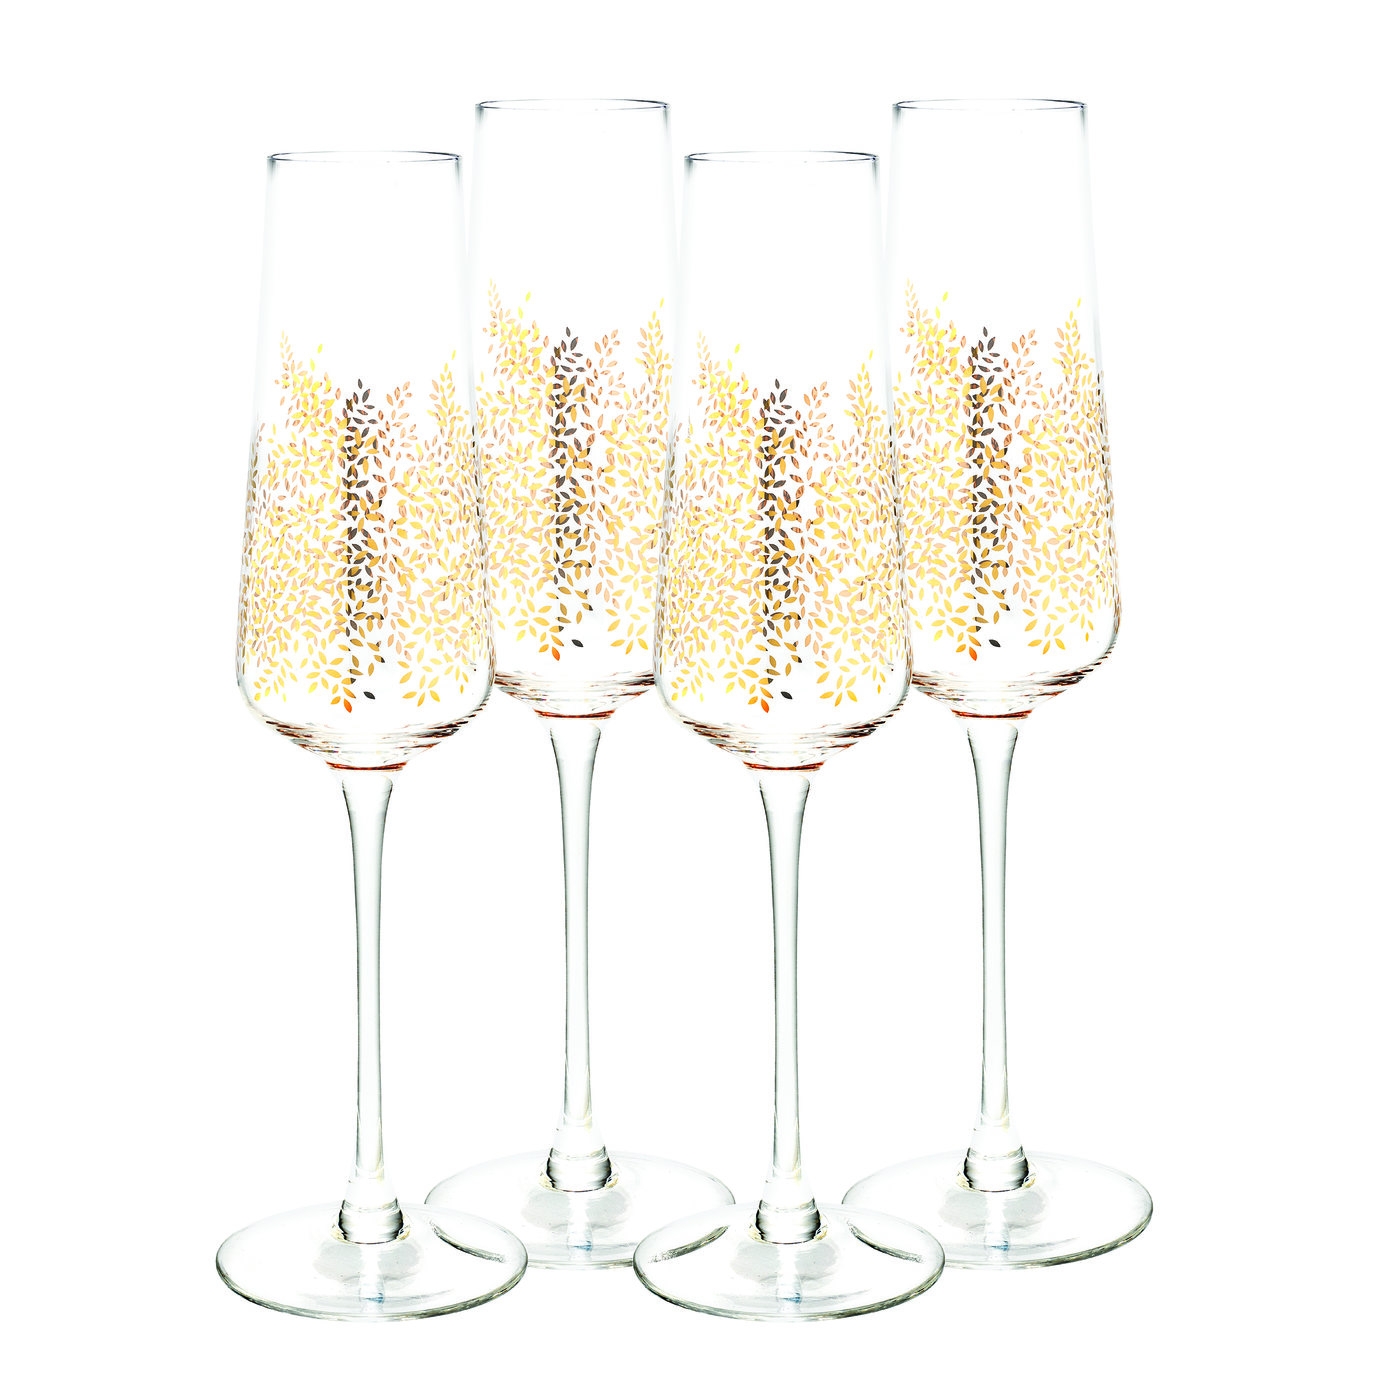 포트메리온 '사라 밀러 런던' 샴페인잔 4개 세트 Sara Miller London for Portmeirion Champagne Flute Set of 4